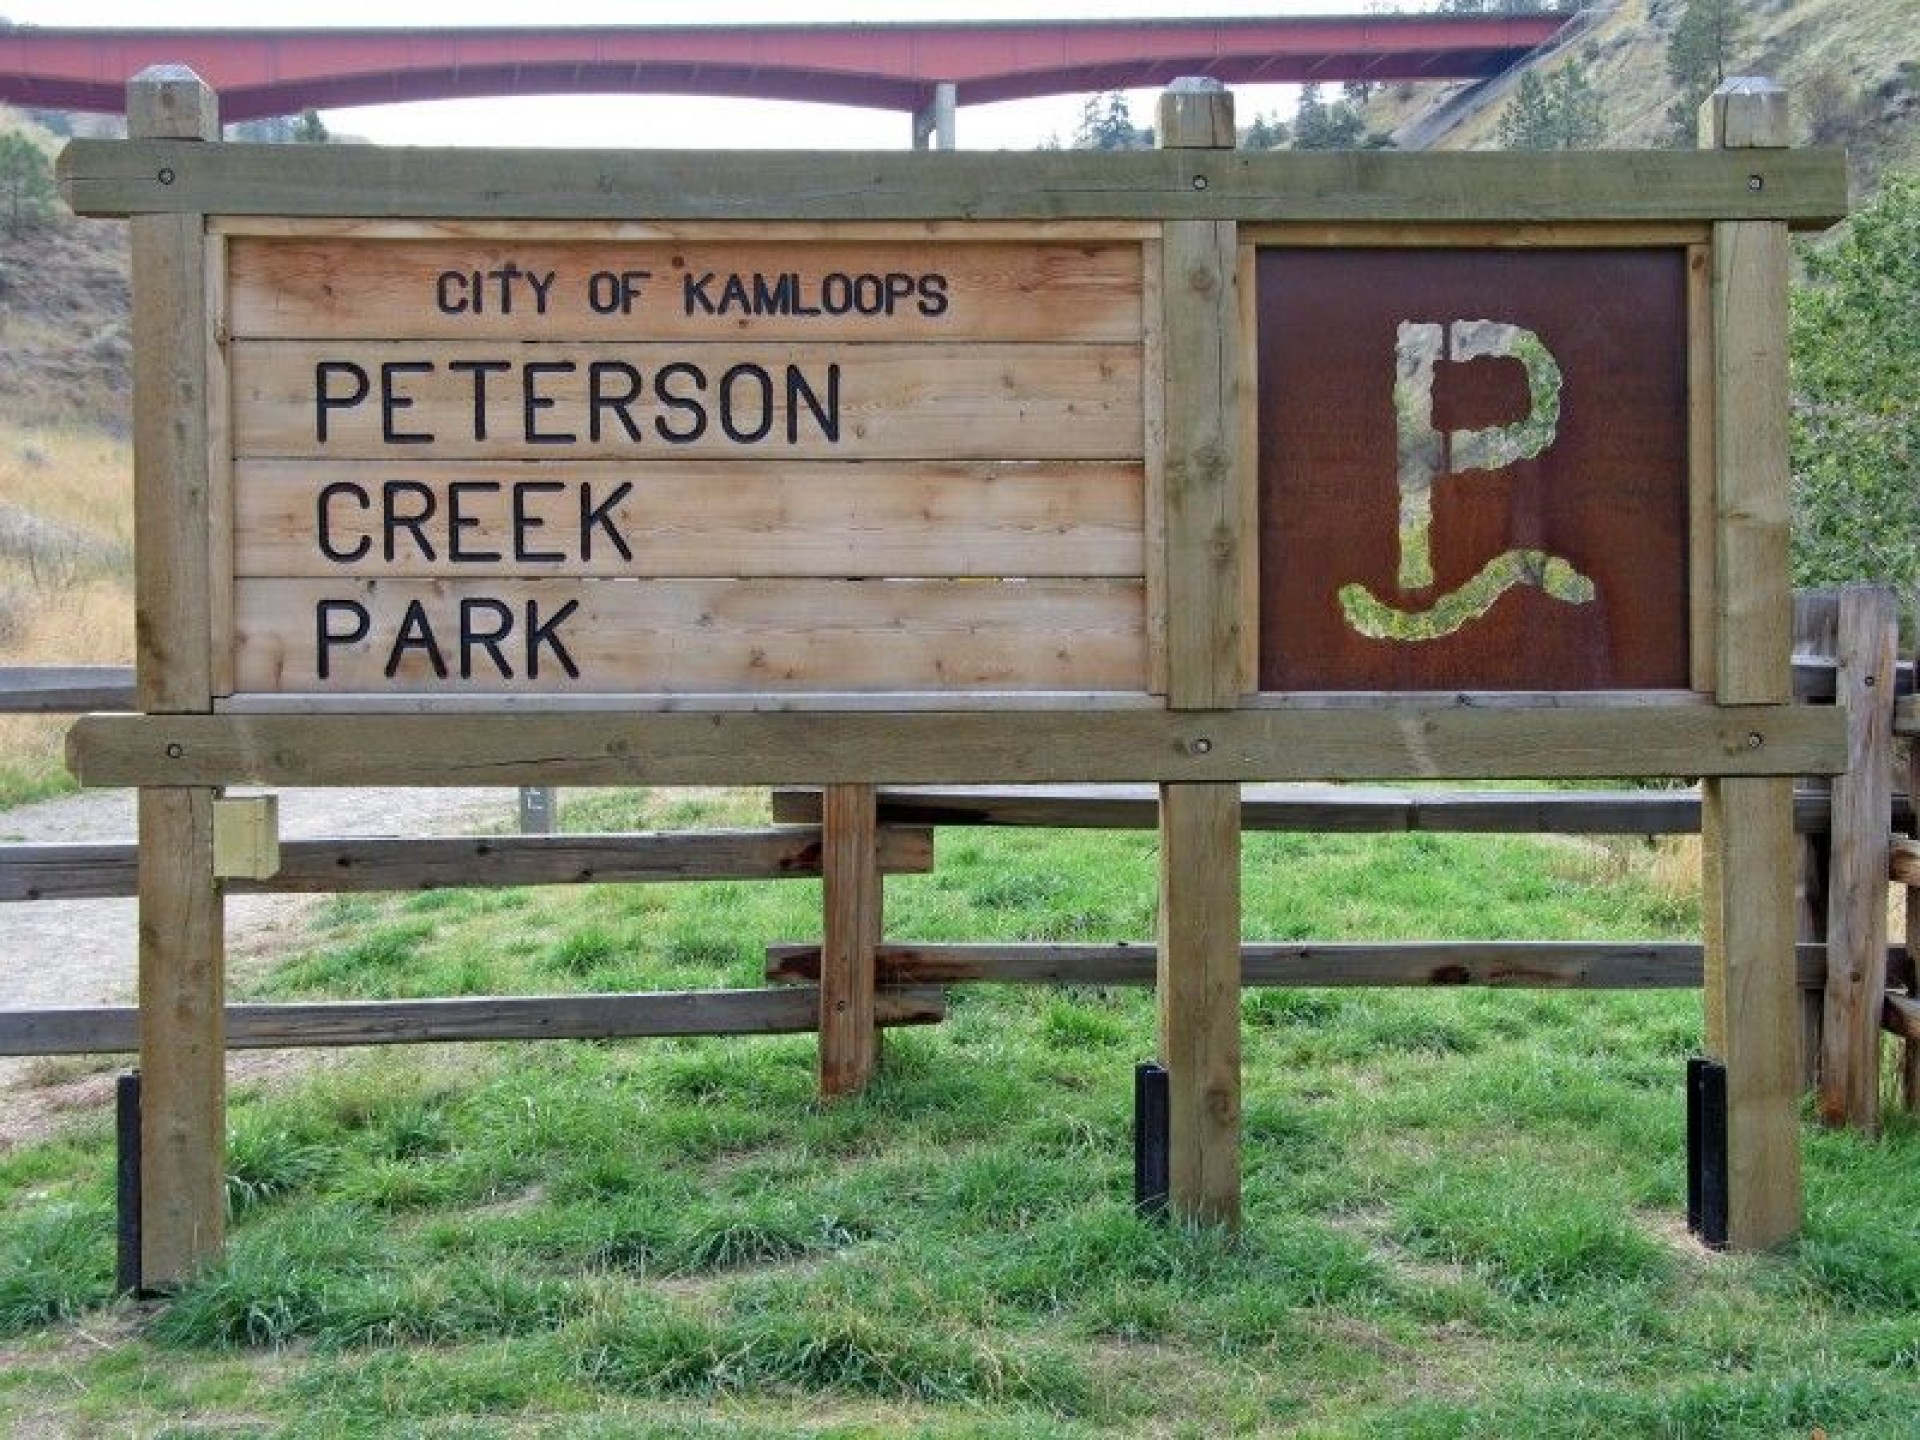 Peterson Creek Park 31